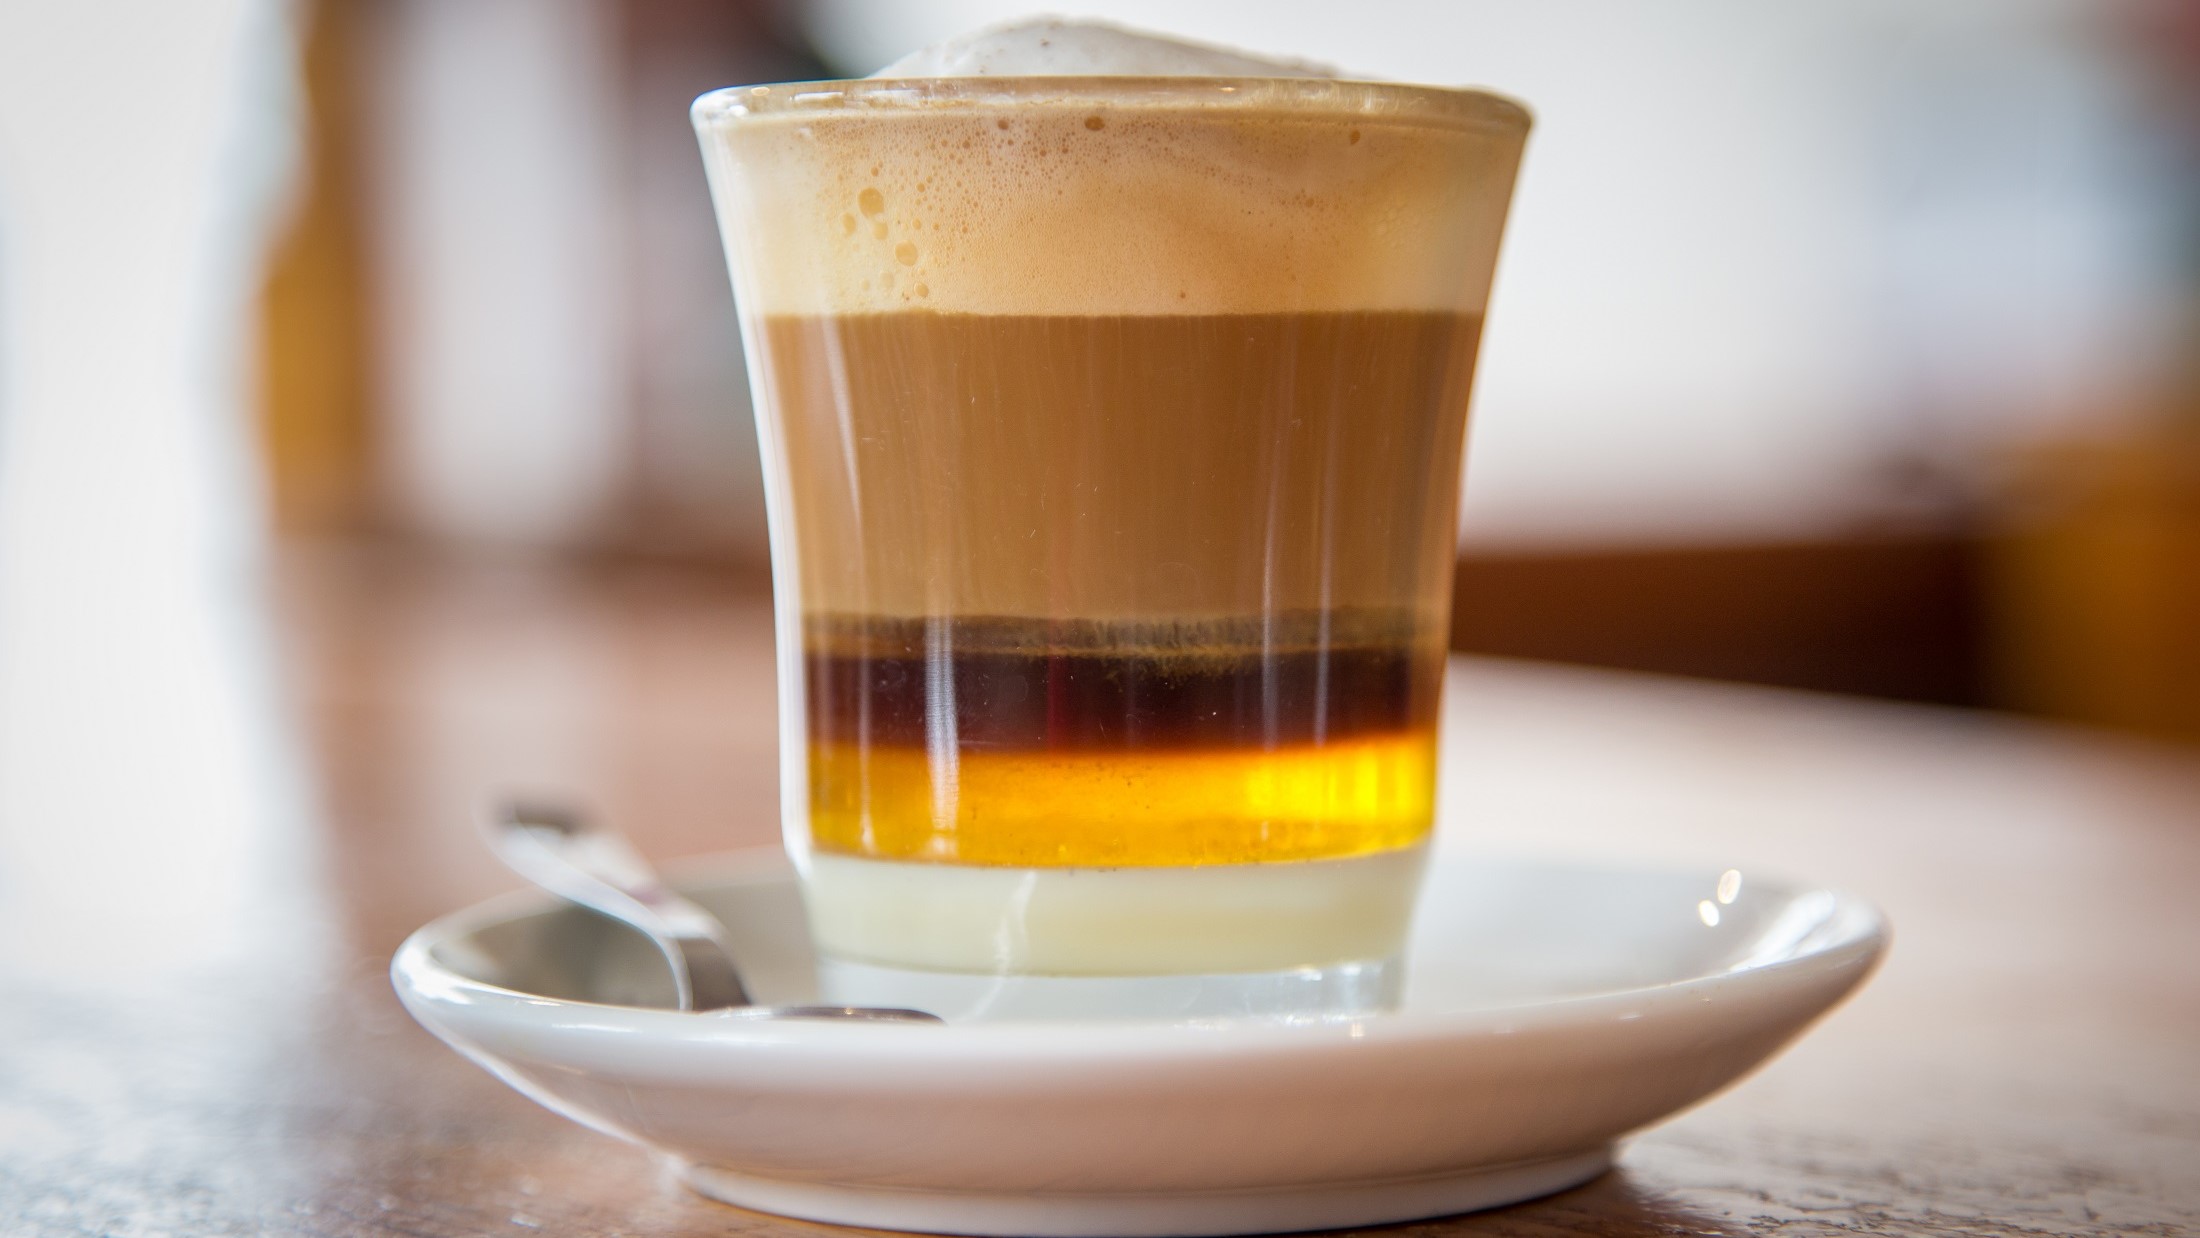 Frontal: Ein Glas mit einem Getränk, dass aus vielen Schichten besteht. Es handelt sich um eine spanische Kaffeespezialität von Teneriffa. Das Getränk heißt Barraquito.